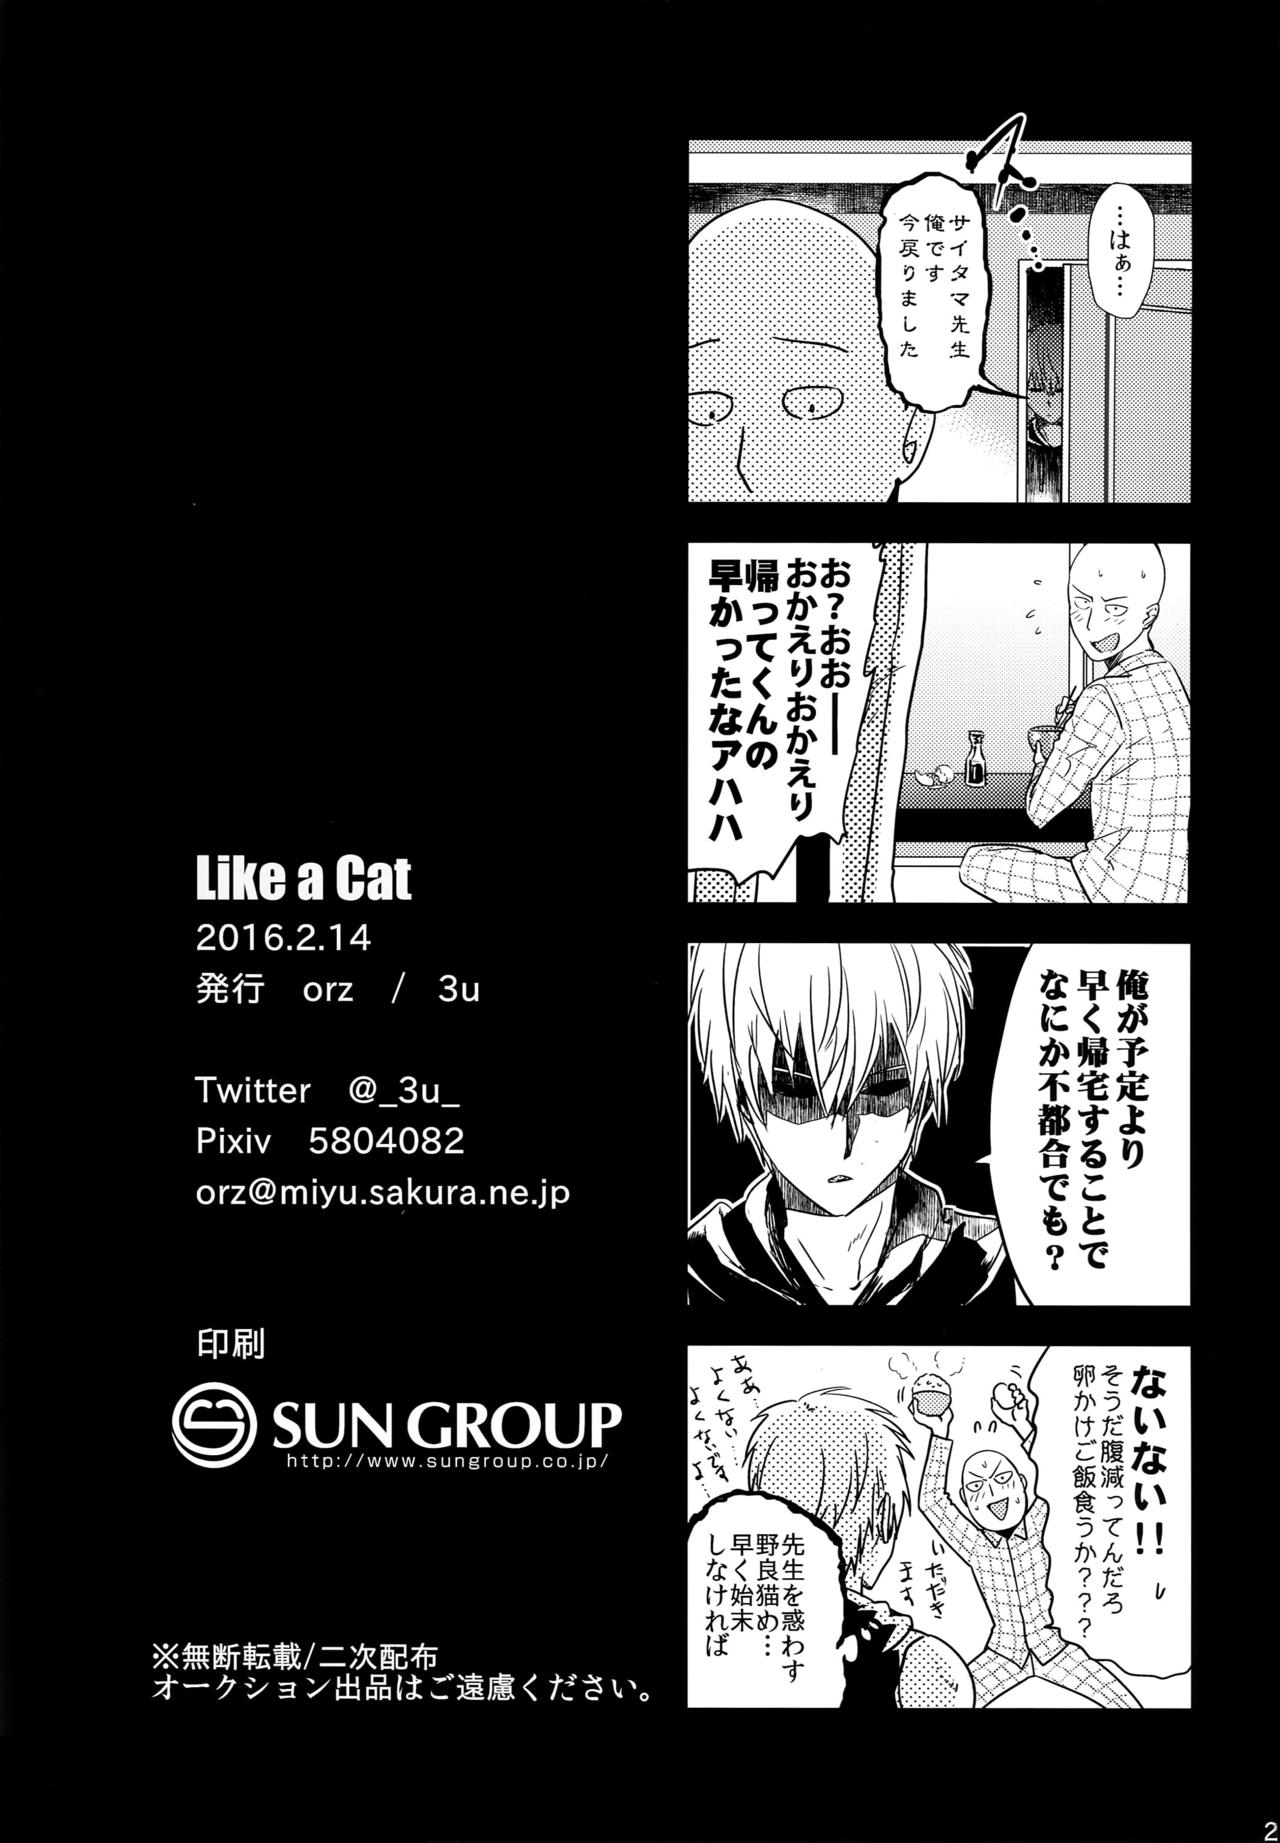 [orz (3u)] Like a Cat (ワンパンマン)